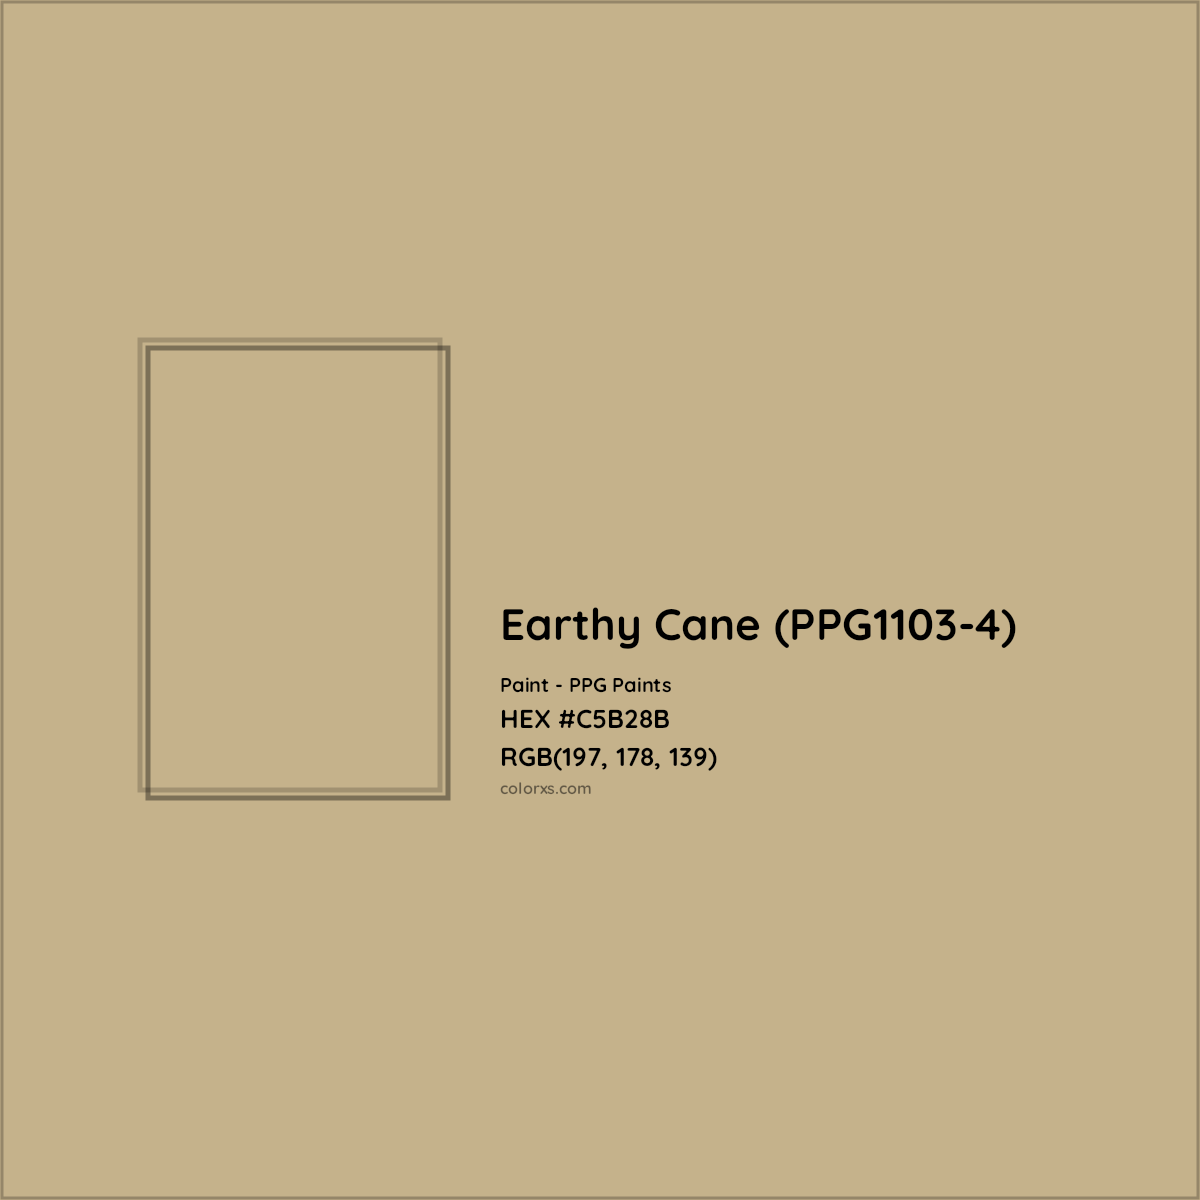 HEX #C5B28B Earthy Cane (PPG1103-4) Paint PPG Paints - Color Code